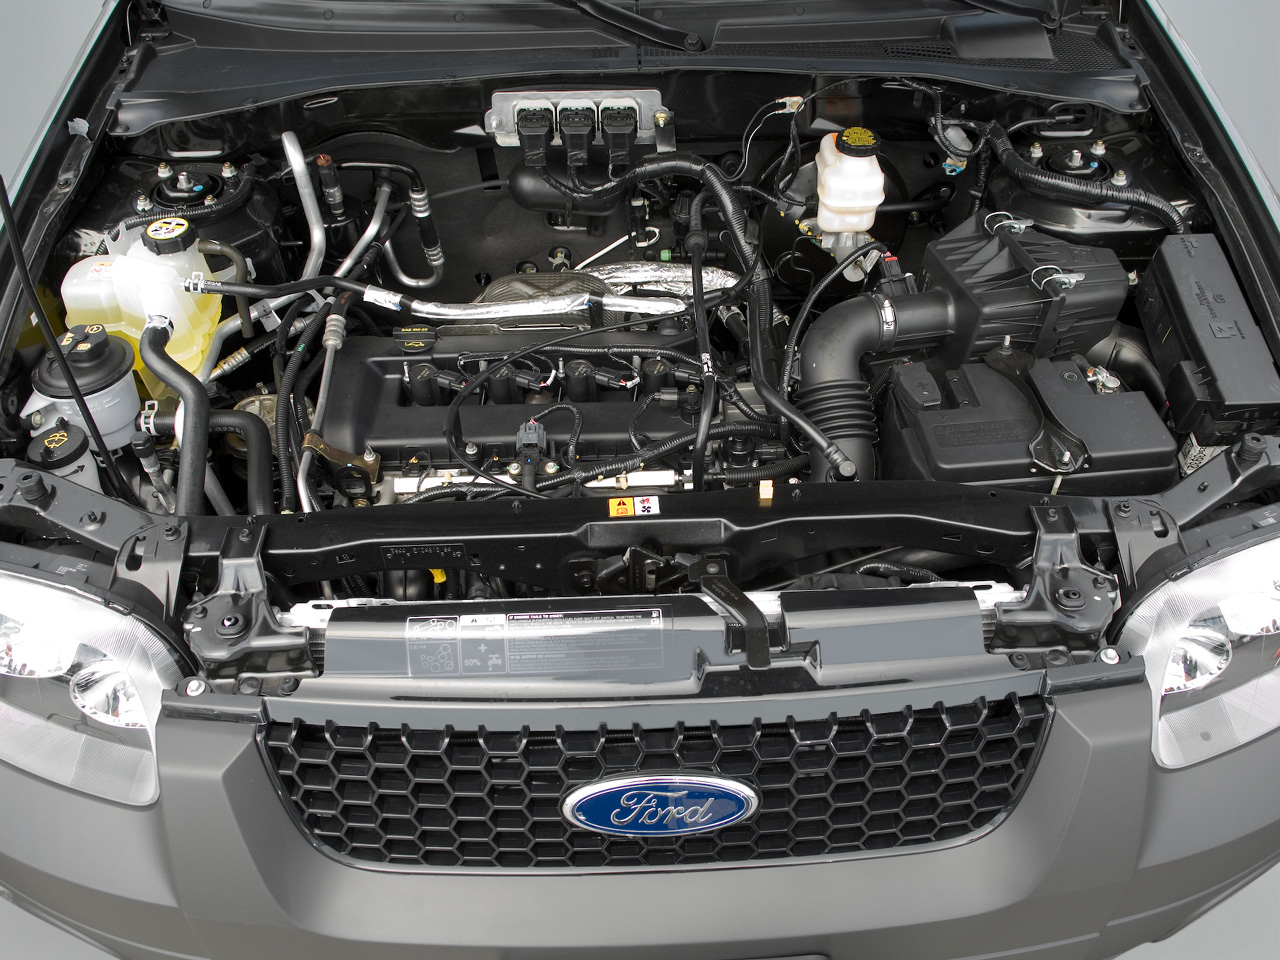 New Ford Escape 2.3L XLT A/T berteknologi variable valve timing